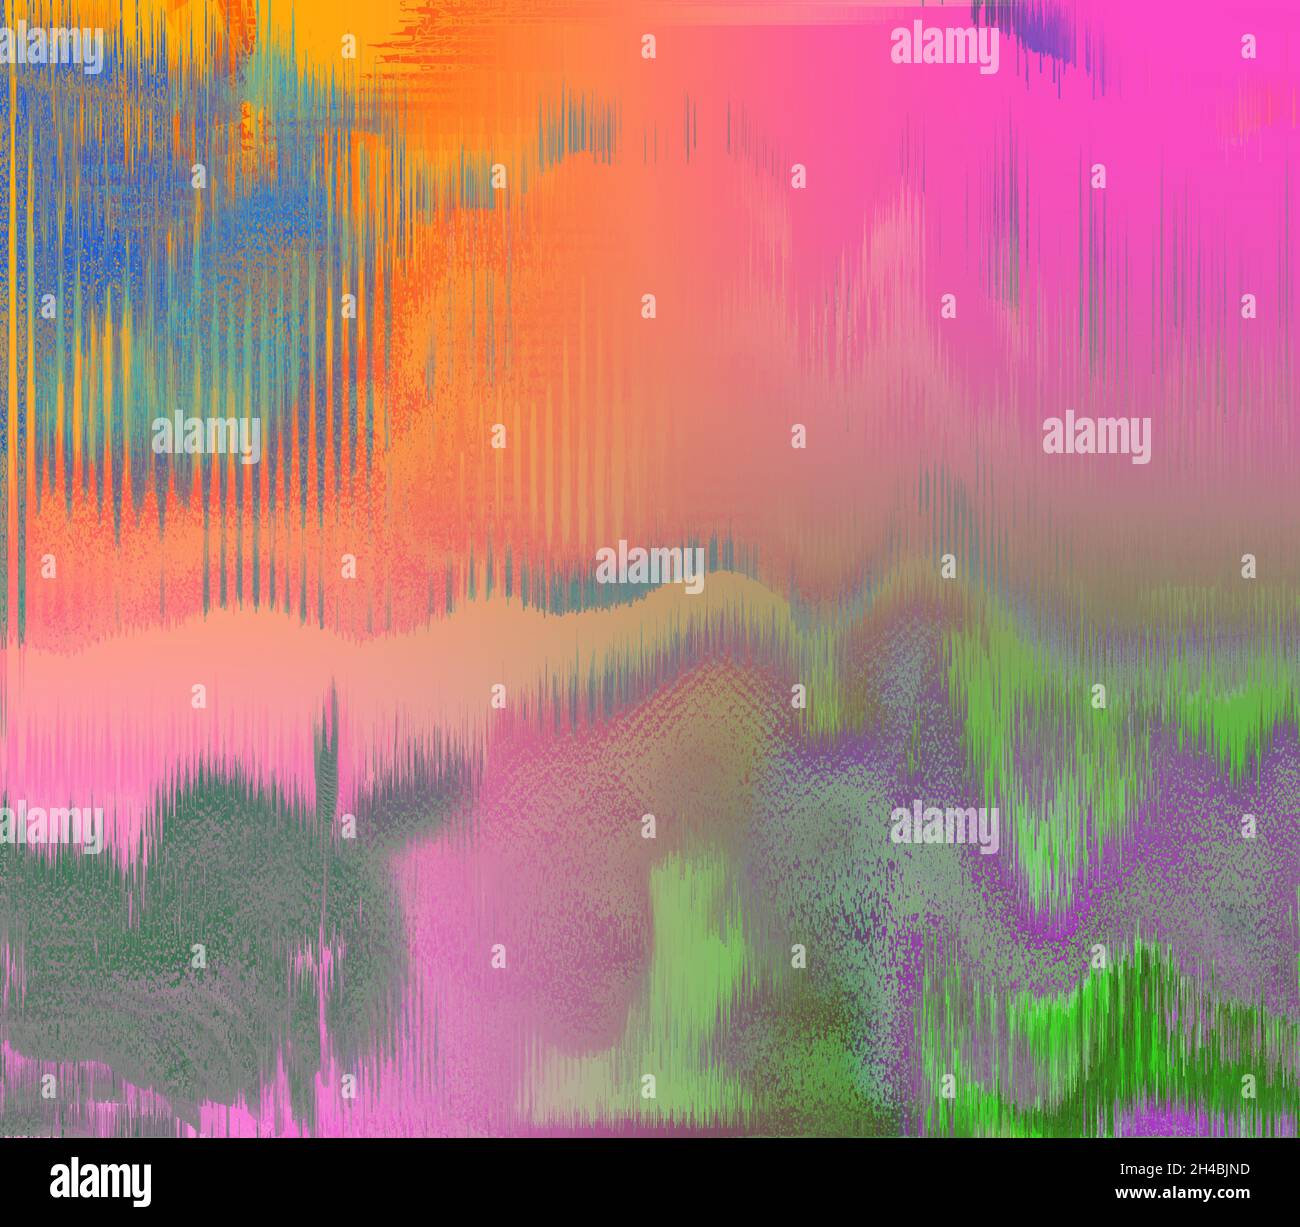 Immagine di sfondo astratta iridescente glitch art. Foto Stock